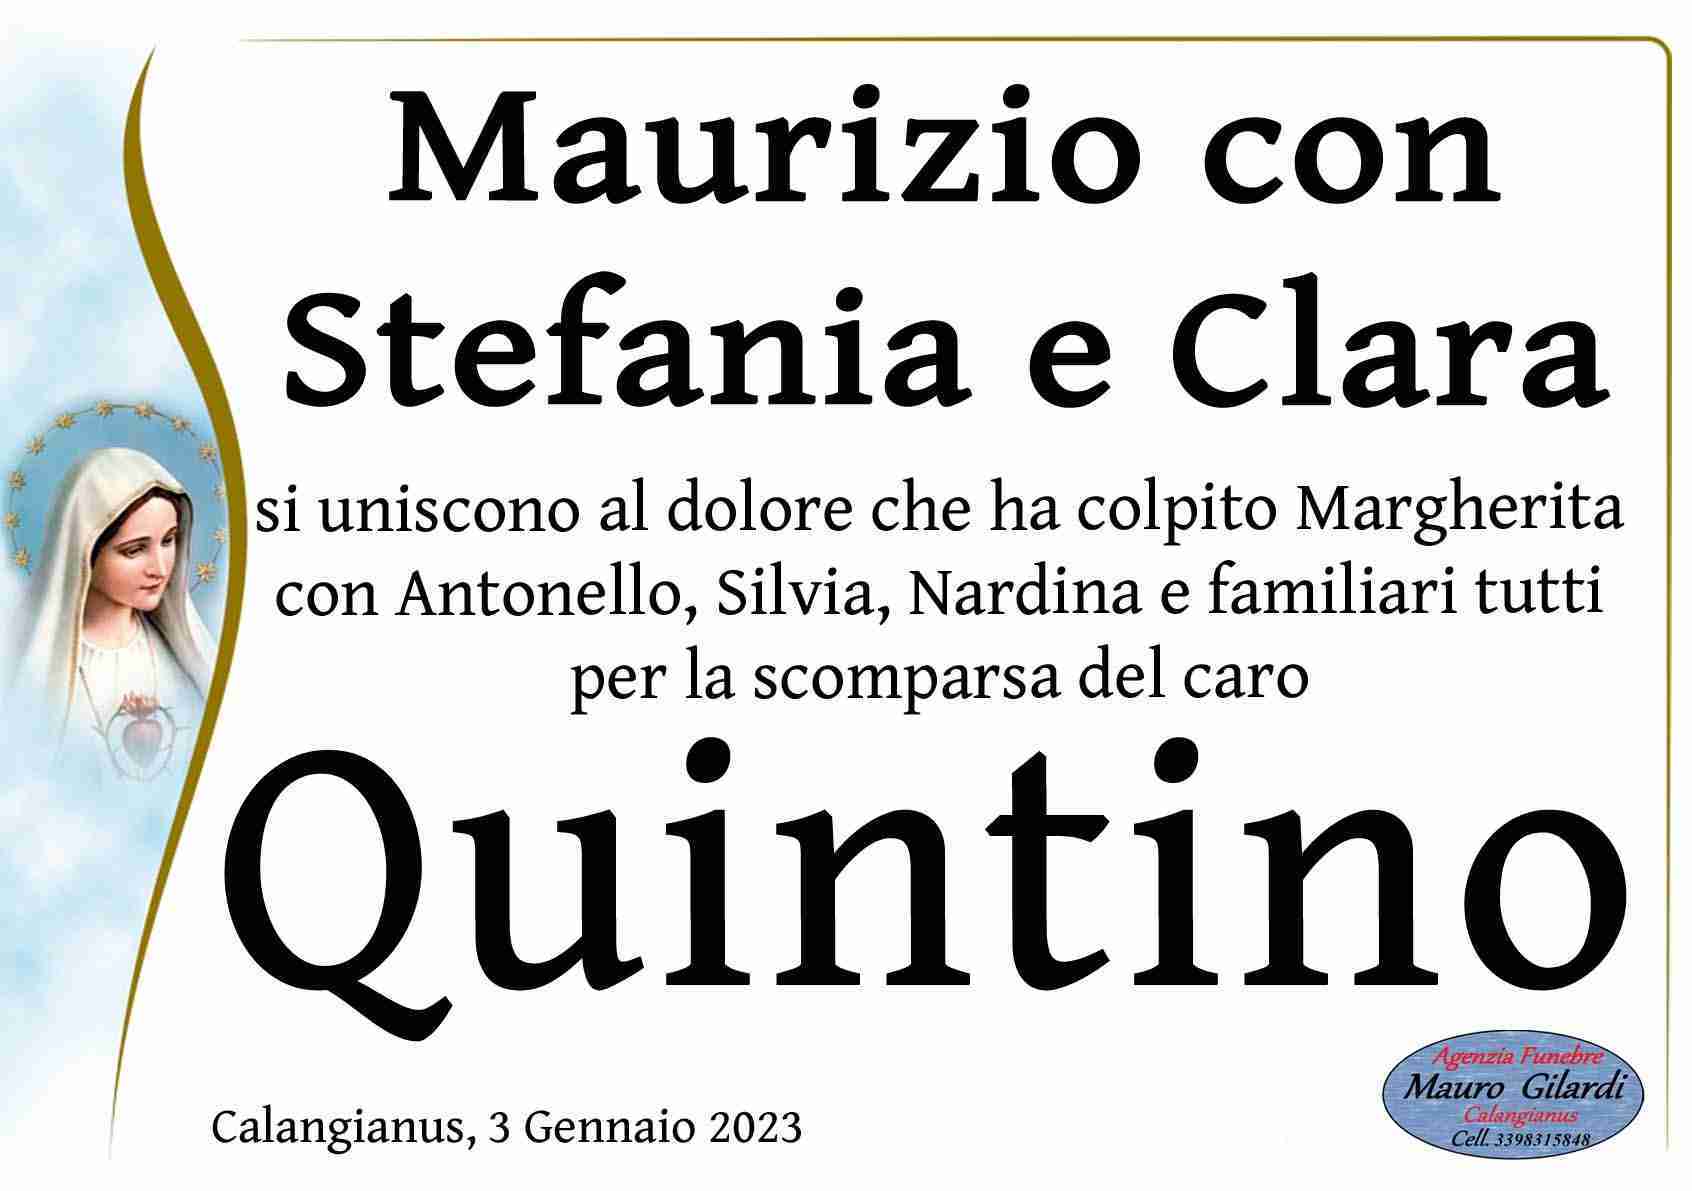 Quintino Luciano